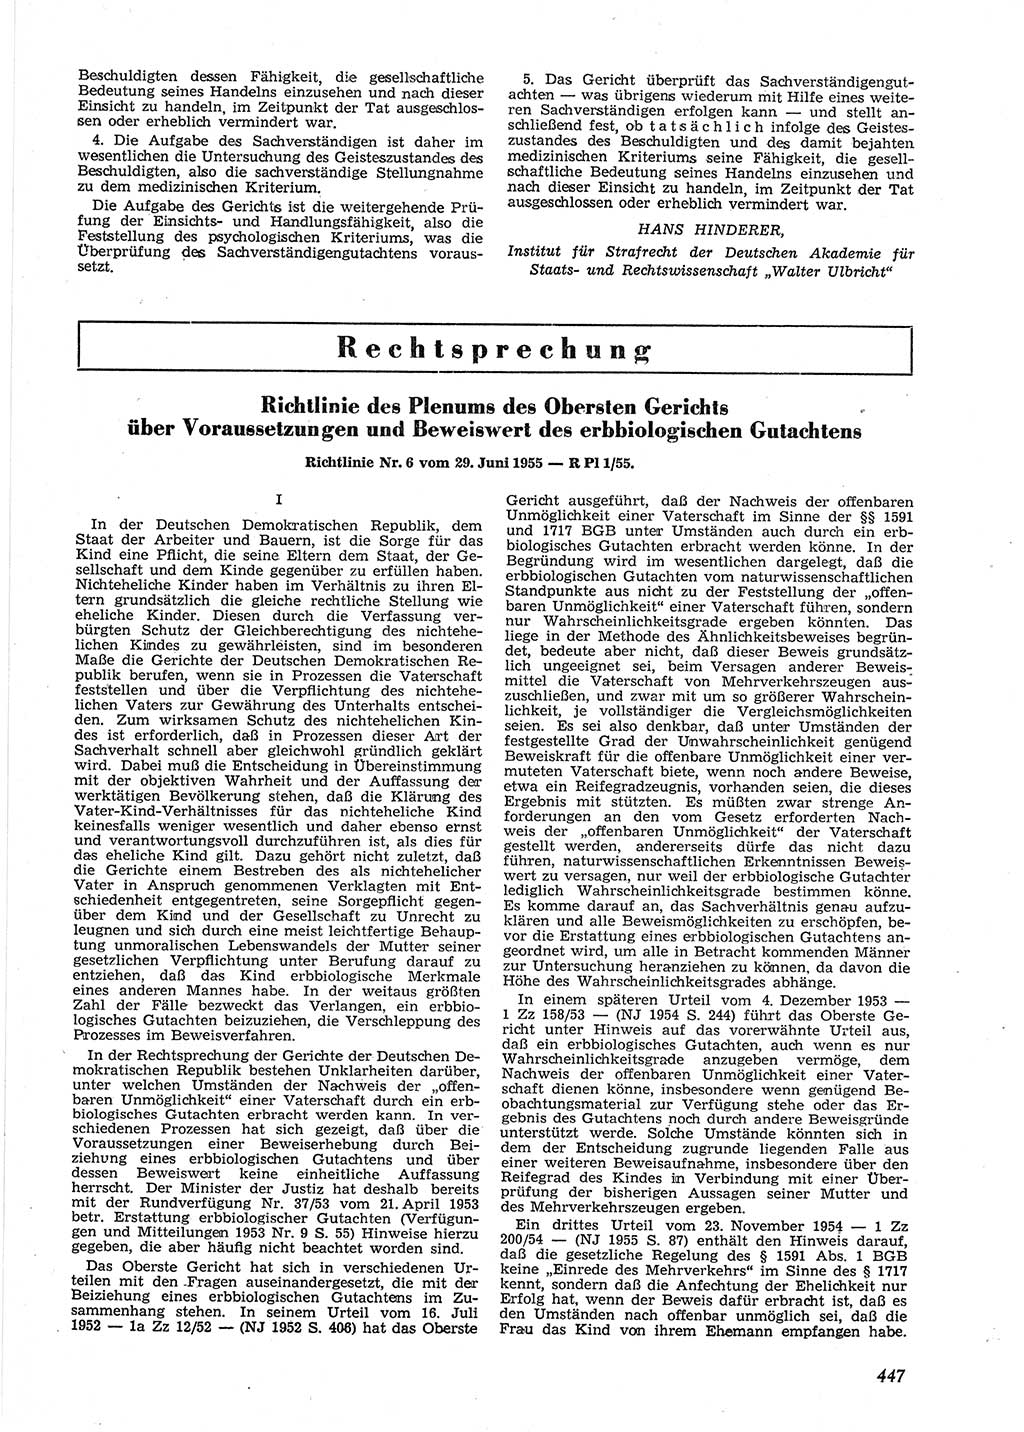 Neue Justiz (NJ), Zeitschrift für Recht und Rechtswissenschaft [Deutsche Demokratische Republik (DDR)], 9. Jahrgang 1955, Seite 447 (NJ DDR 1955, S. 447)